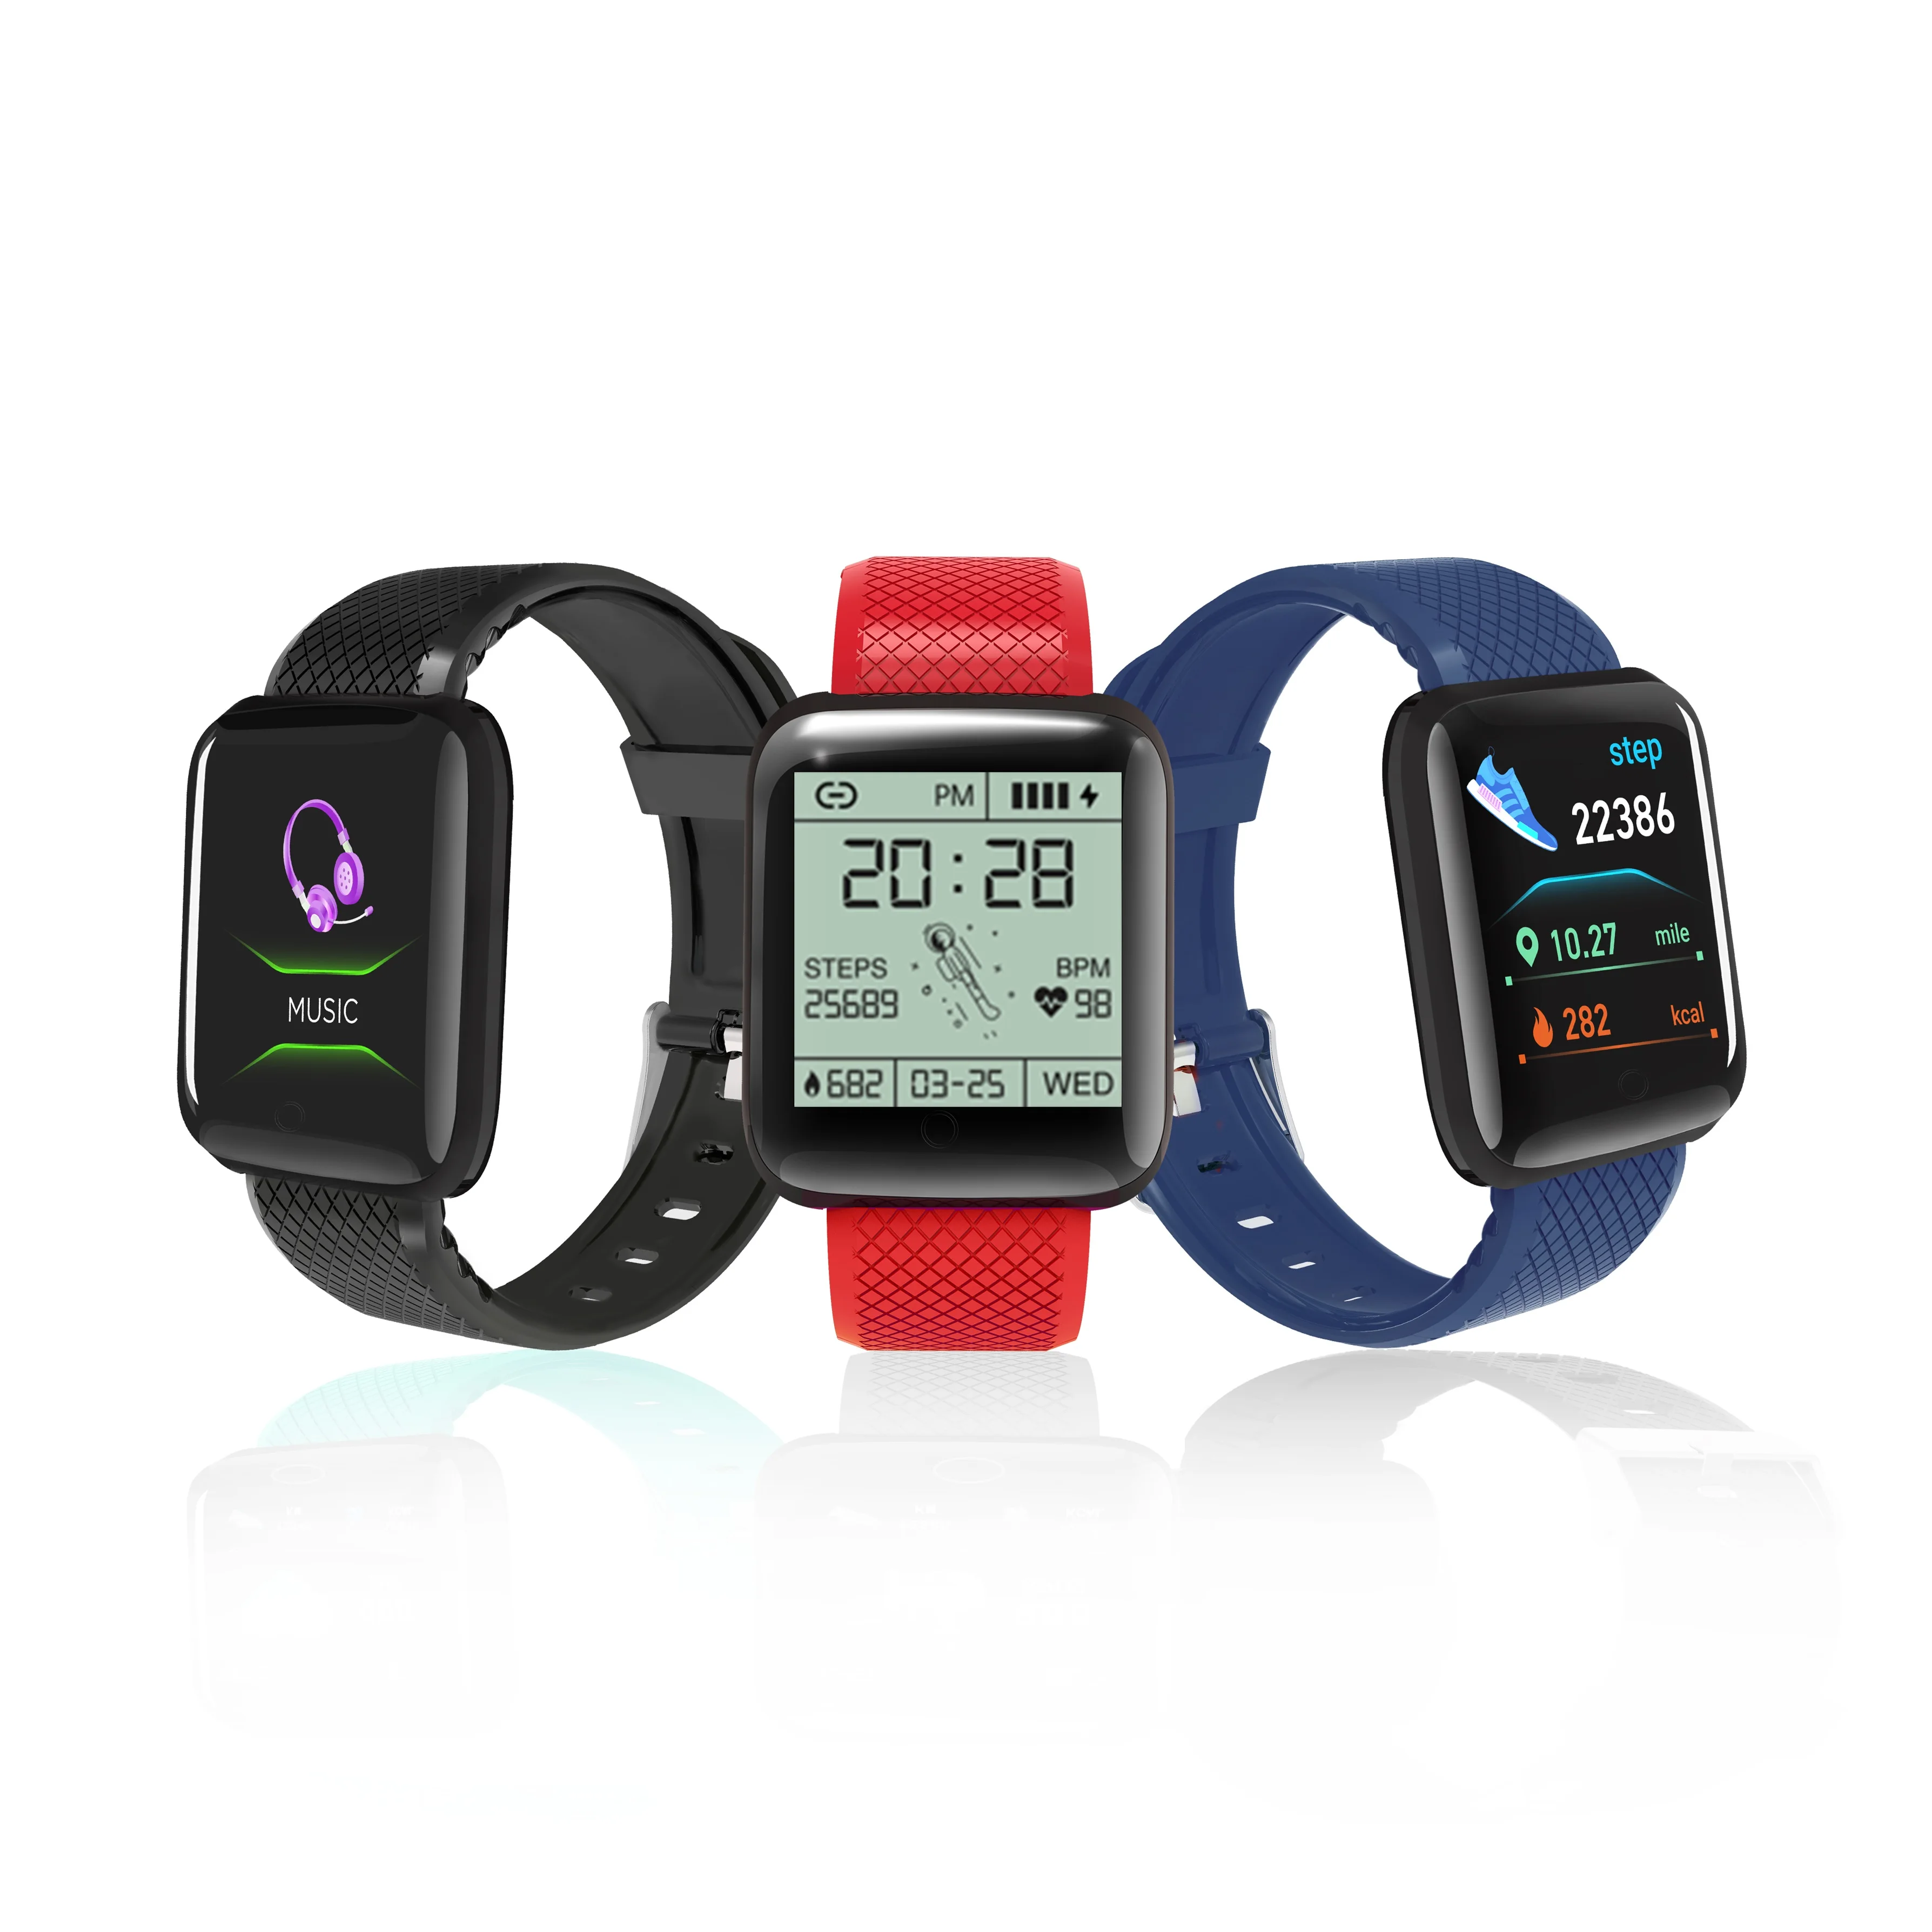 

Best Selling 116 Plus Smart Watch Color Screen Fitness Tracker Smart Bracelet Heart Rate Blood Pressure Monitor D13 Smart Watch, Multi